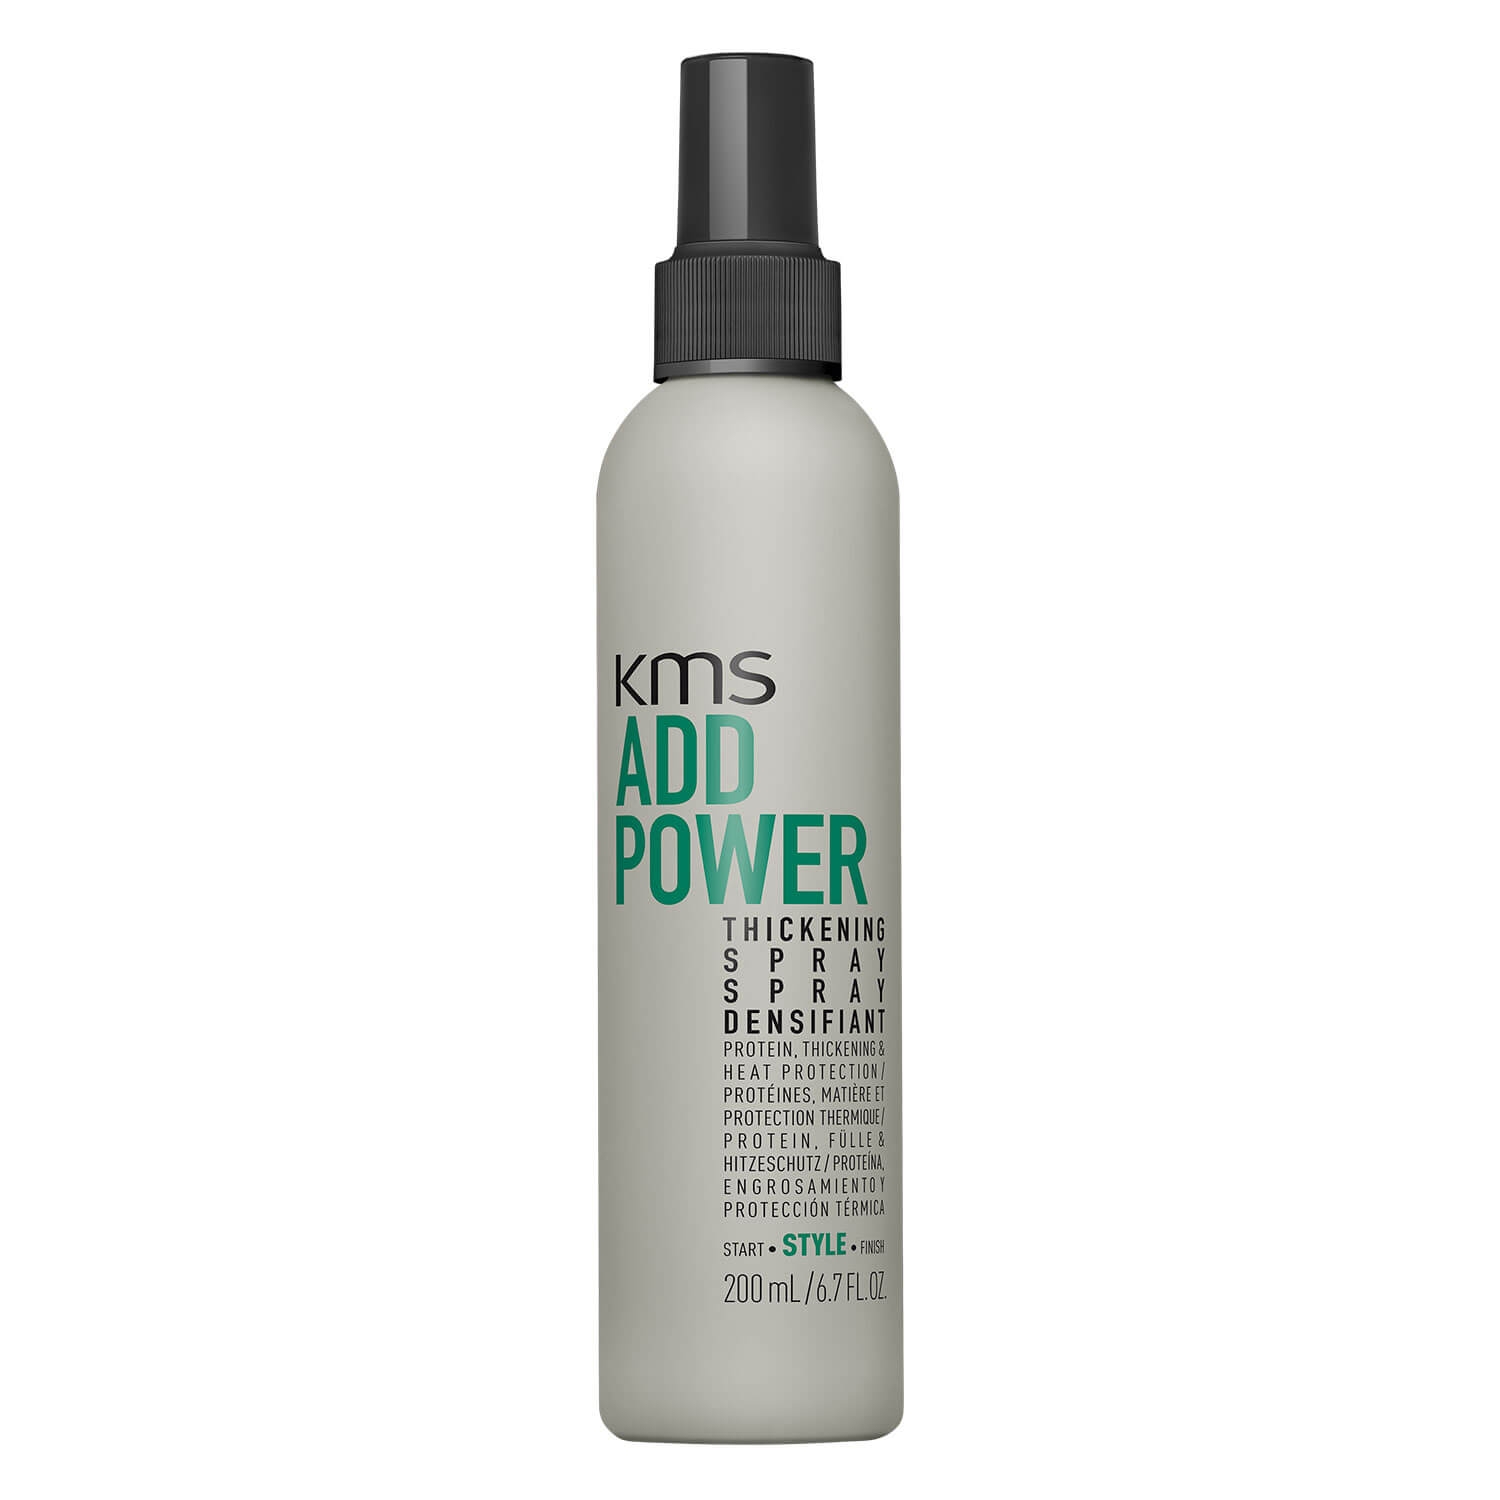 Produktbild von Add Power - Thickening Spray